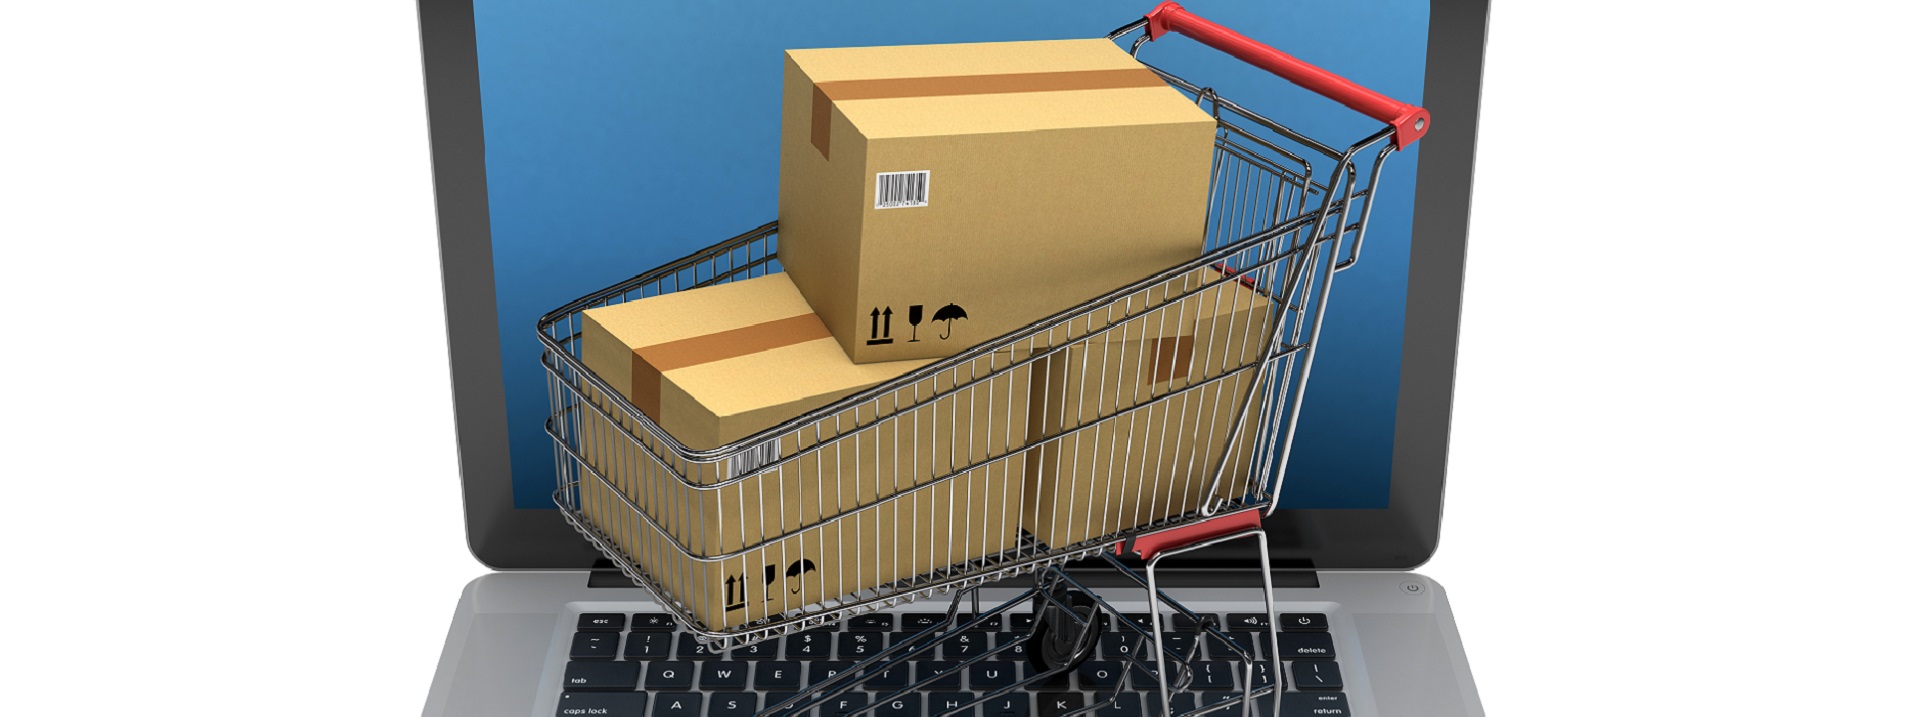 Online Shopping Cart How to Start An Online Business